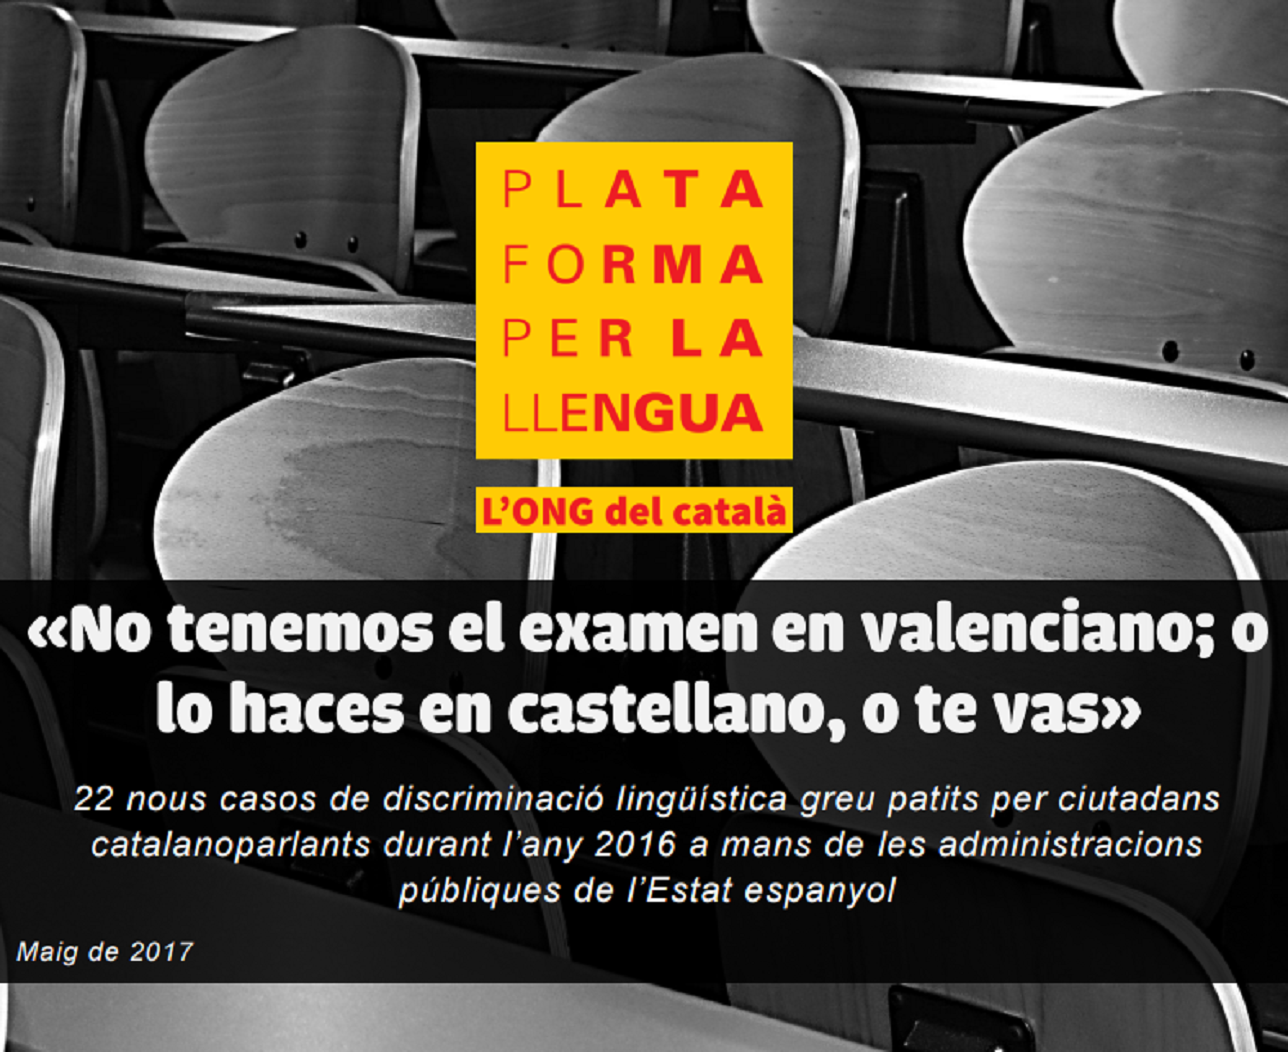 La normalización del uso y enseñanza del valenciano se resolverá en los tribunales